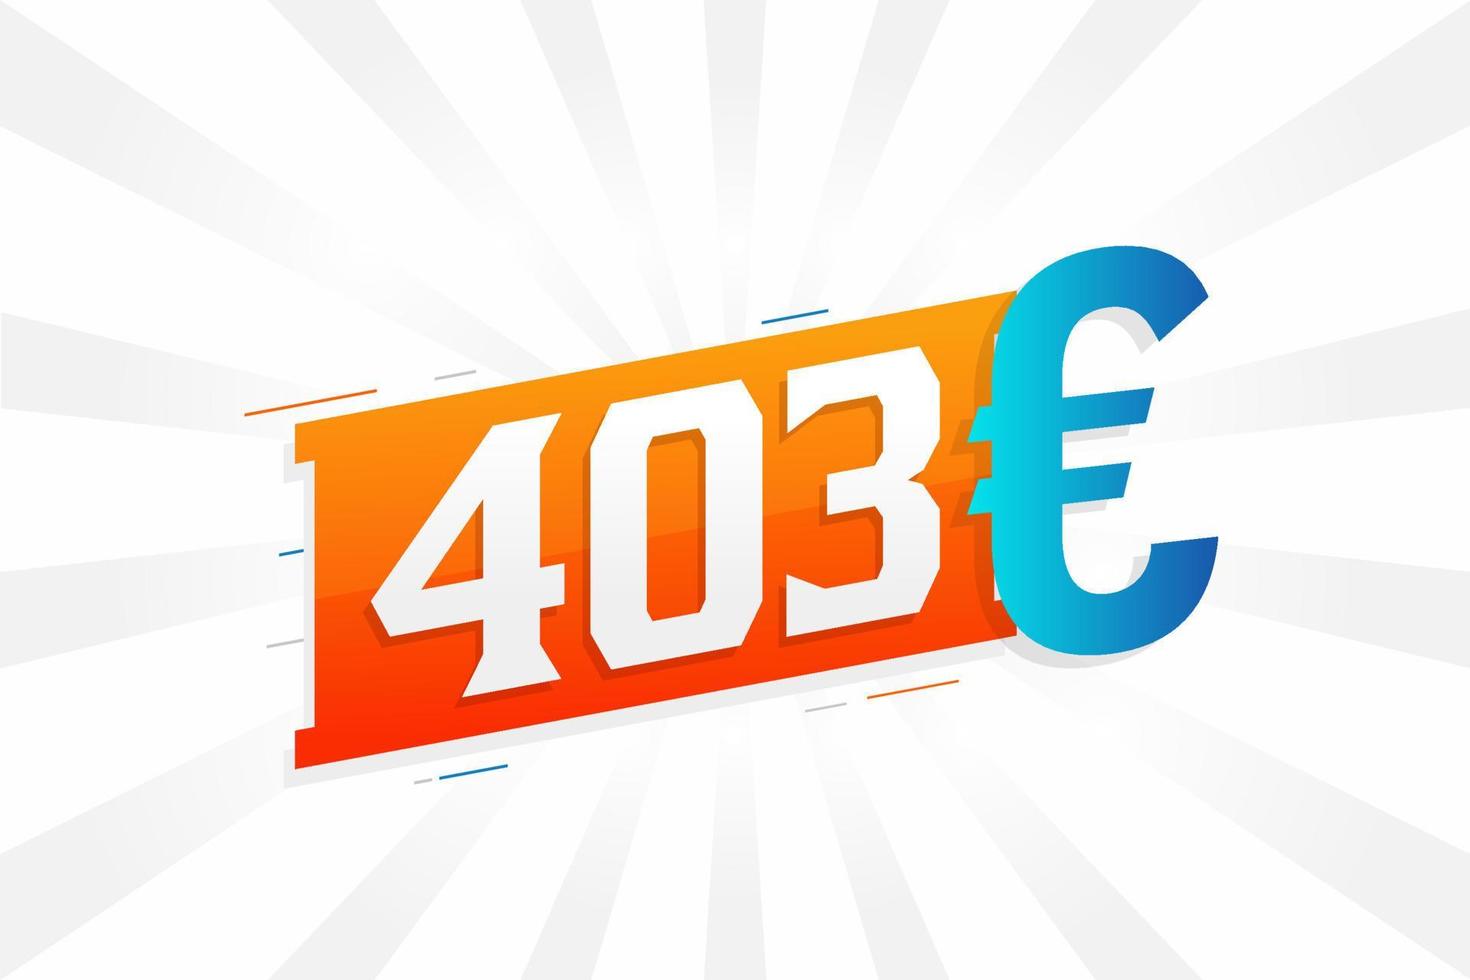 Symbole de texte vectoriel de devise 403 euros. 403 euros vecteur de stock d'argent de l'union européenne